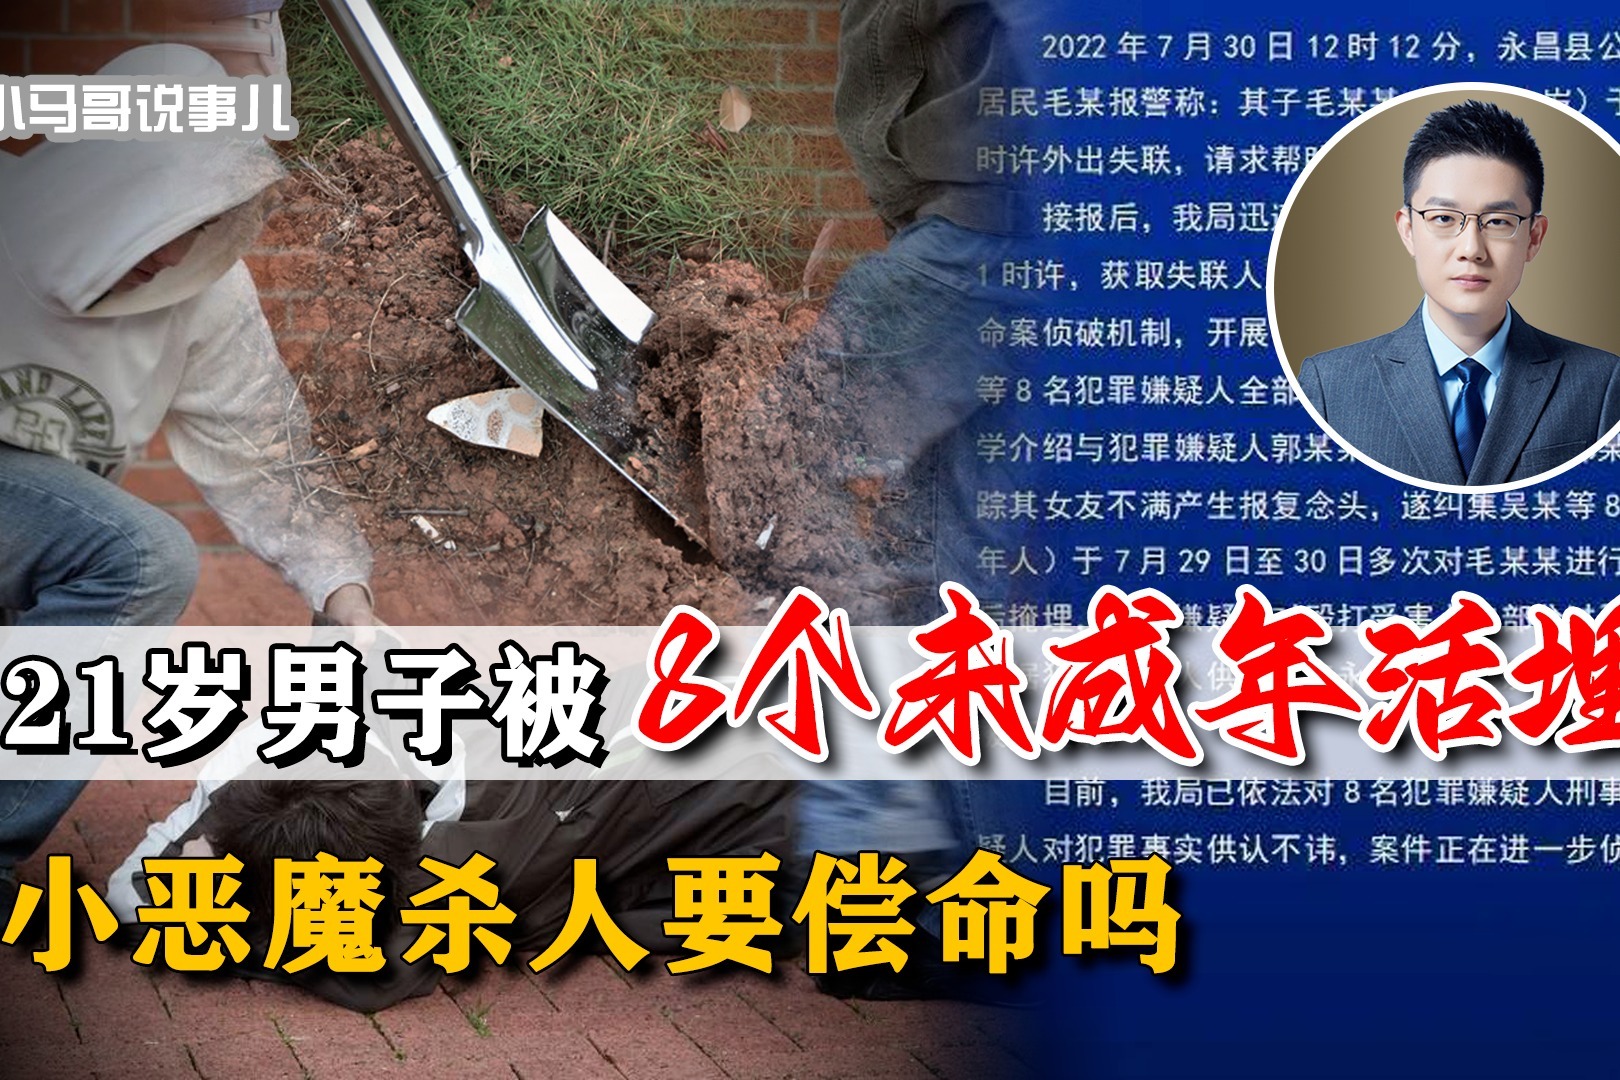 广东省汕头市 《漂浮在海岛上的无头尸》-凶杀案件推理合集-凶杀案件推理合集-哔哩哔哩视频